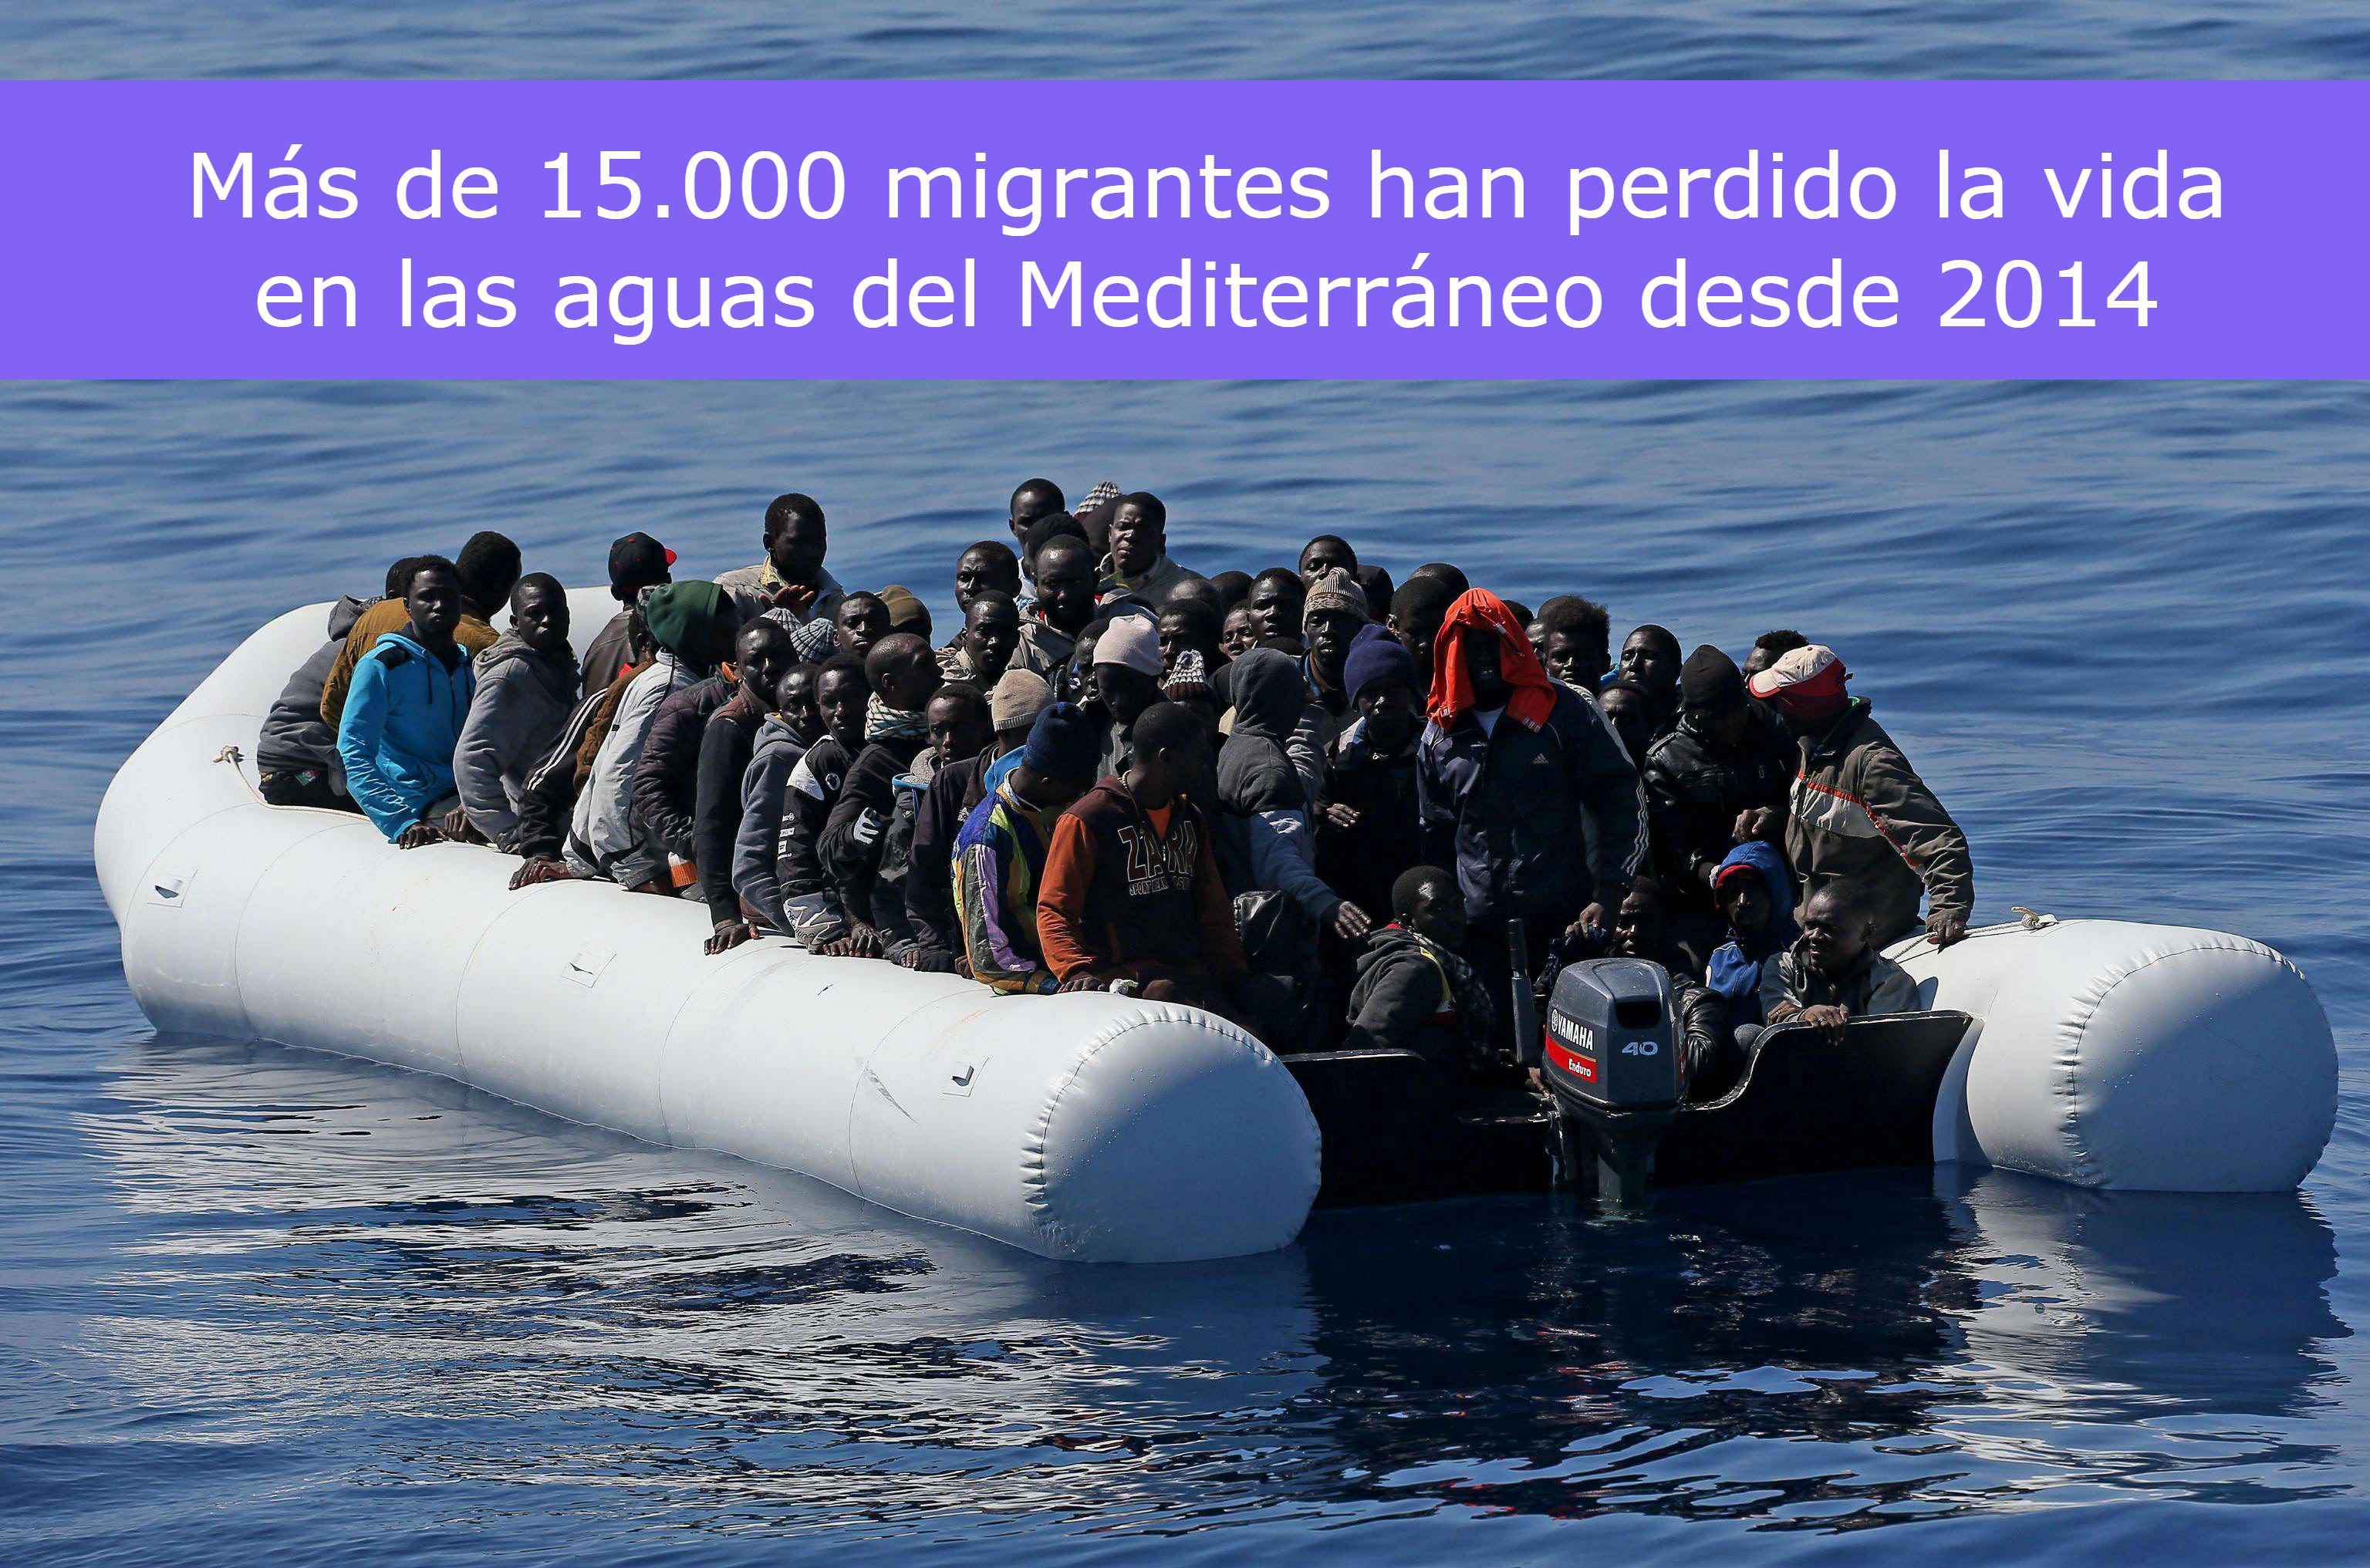 Más de 15.000 migrantes han perdido la vida en las aguas del Mediterráneo